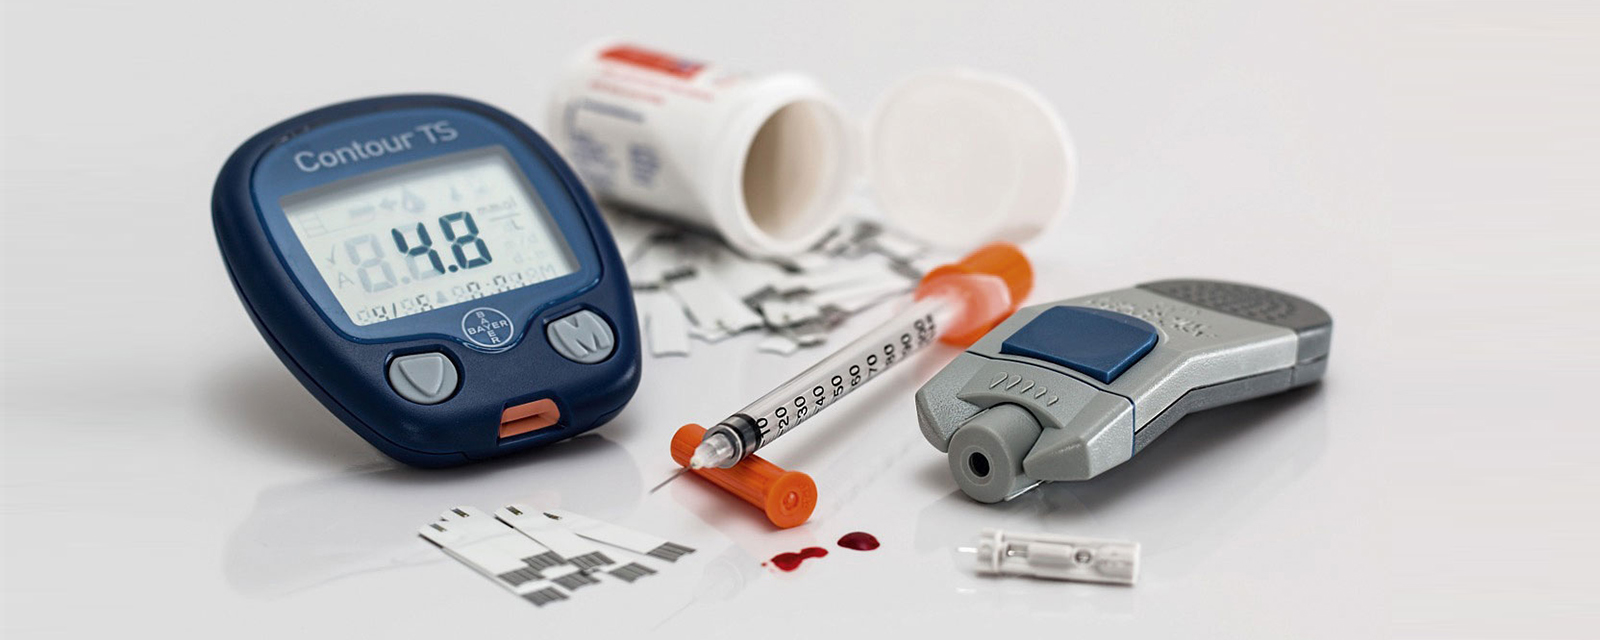 Utensilien für Diabetes